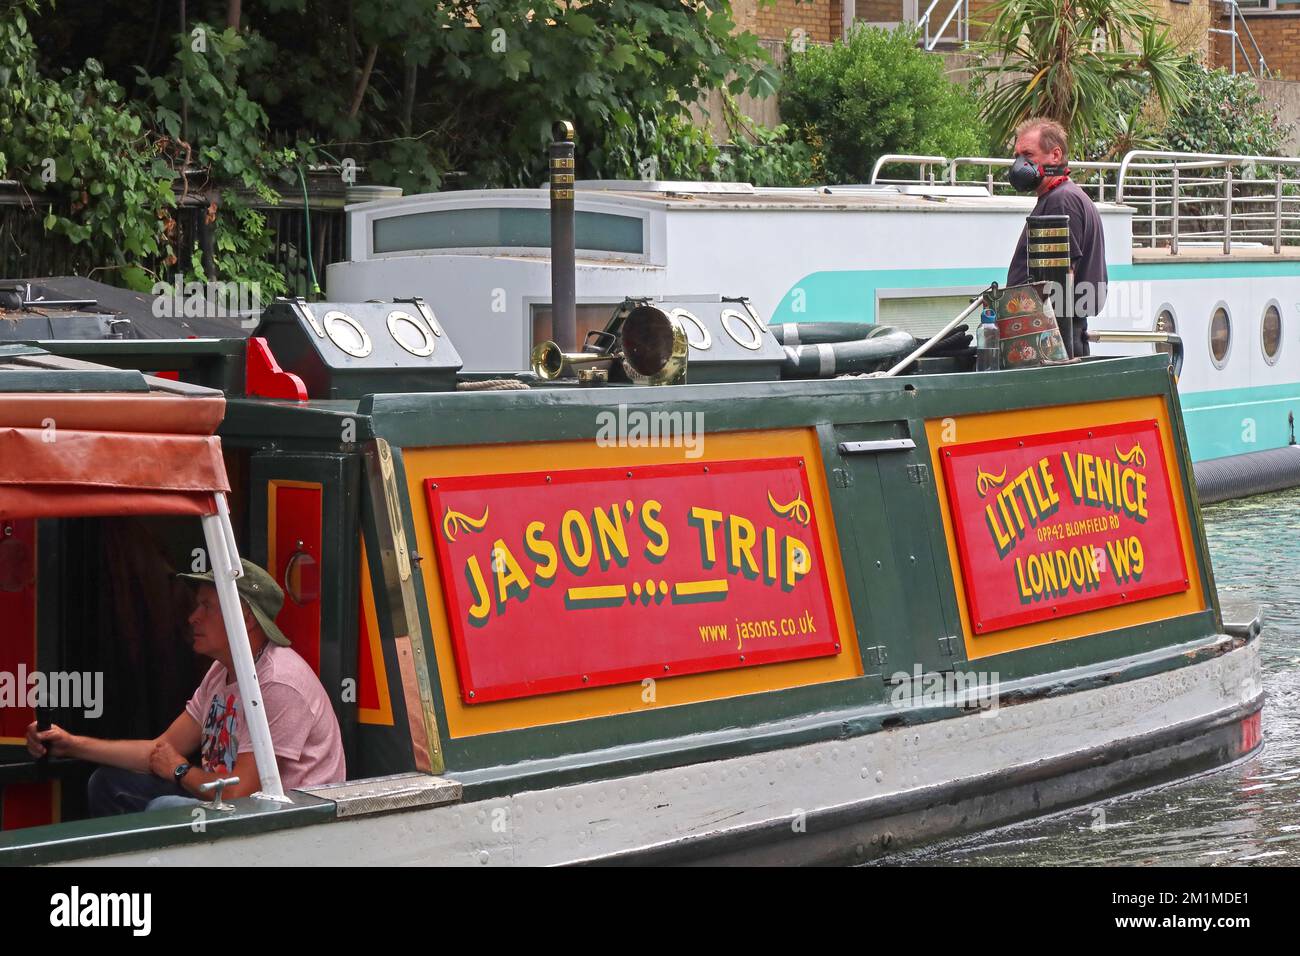 Bateau-barge de canal narrowboat, sur le canal de Regents, Camden, Londres, Angleterre, Royaume-Uni, NW1 9LP Banque D'Images